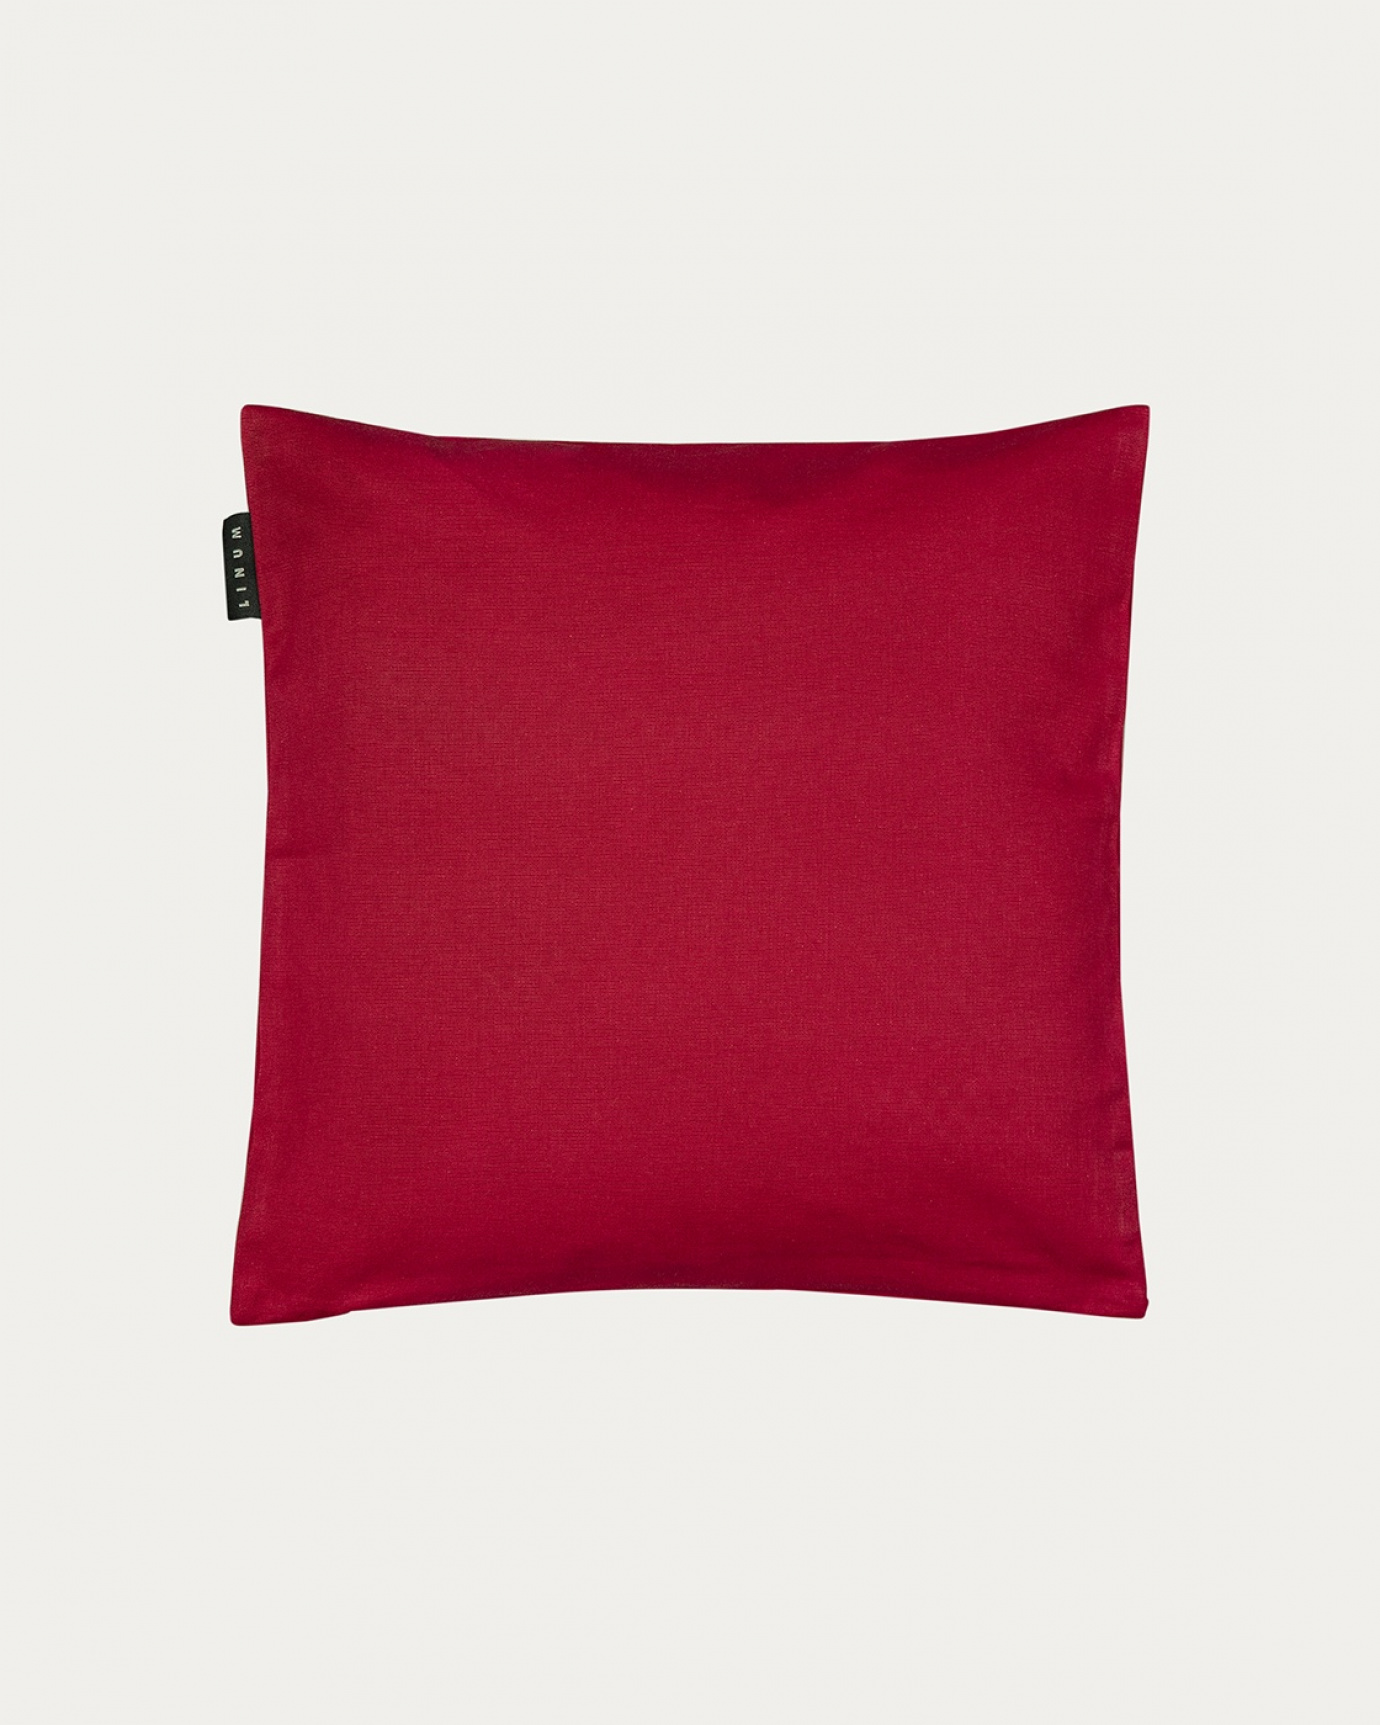 Produktbild röd ANNABELL kuddfodral av mjuk bomull från LINUM DESIGN. Storlek 40x40 cm.